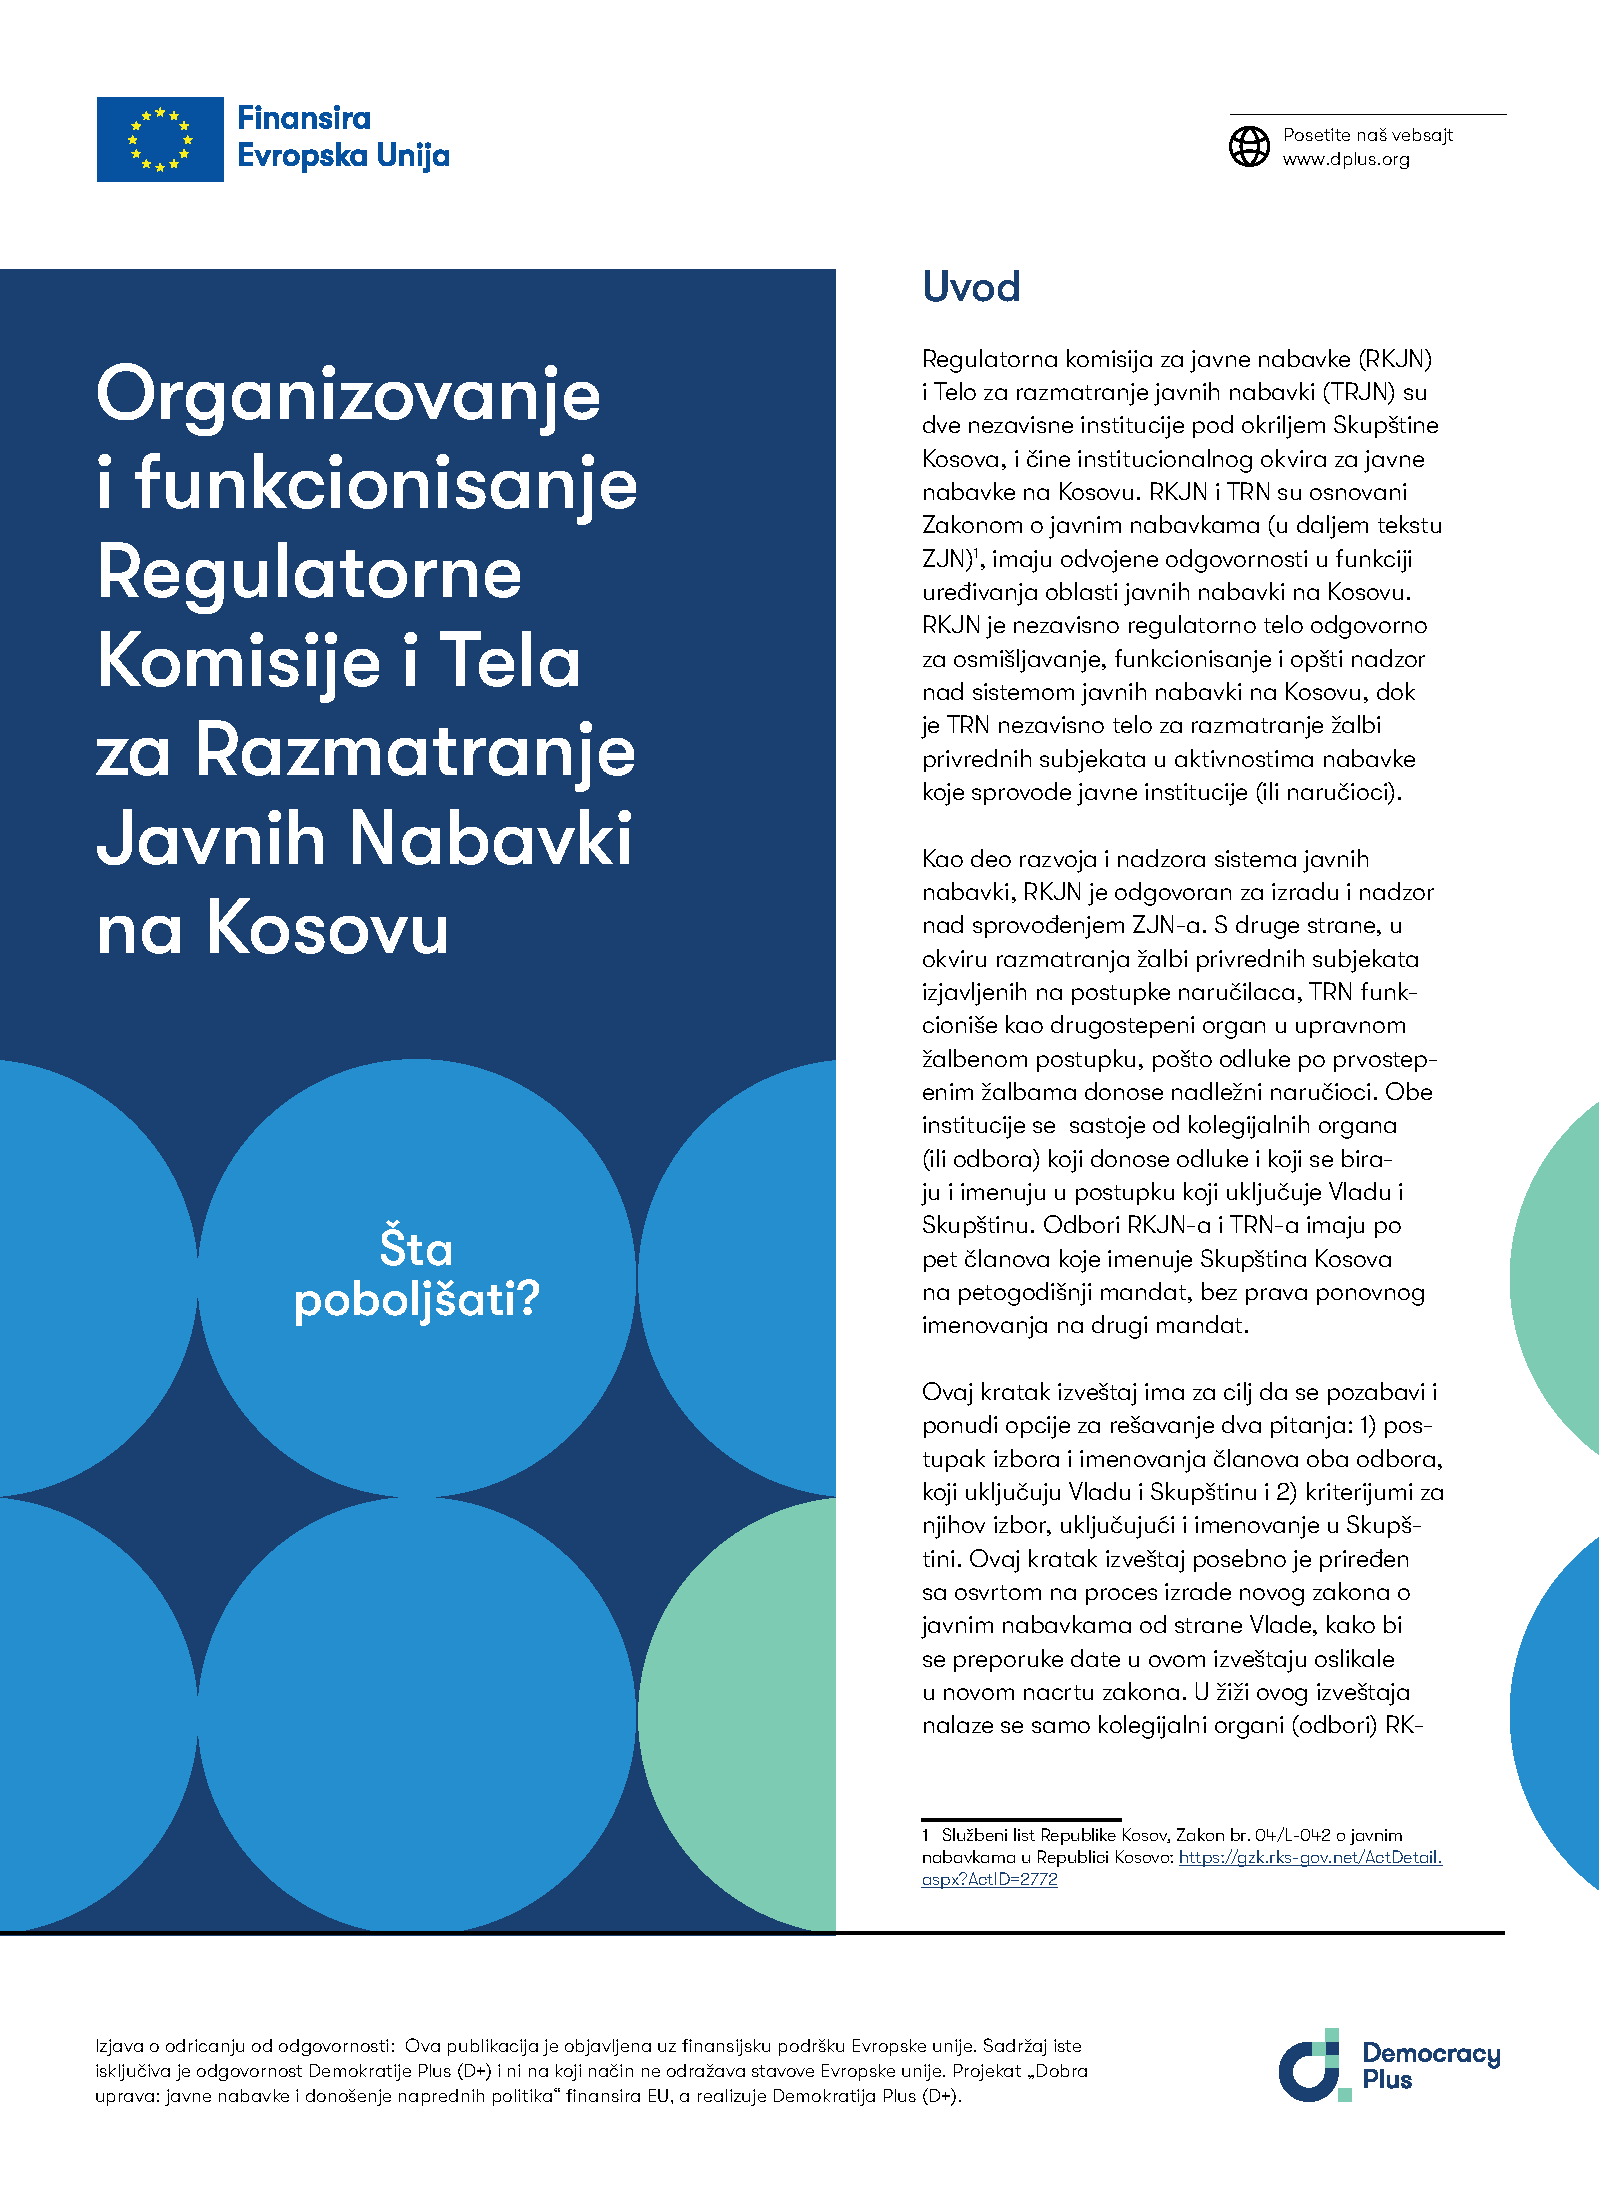 Organizovanje i funkcionisanje Regulatorne Komisije i Tela za Razmatranje Javnih Nabavki na Kosovu